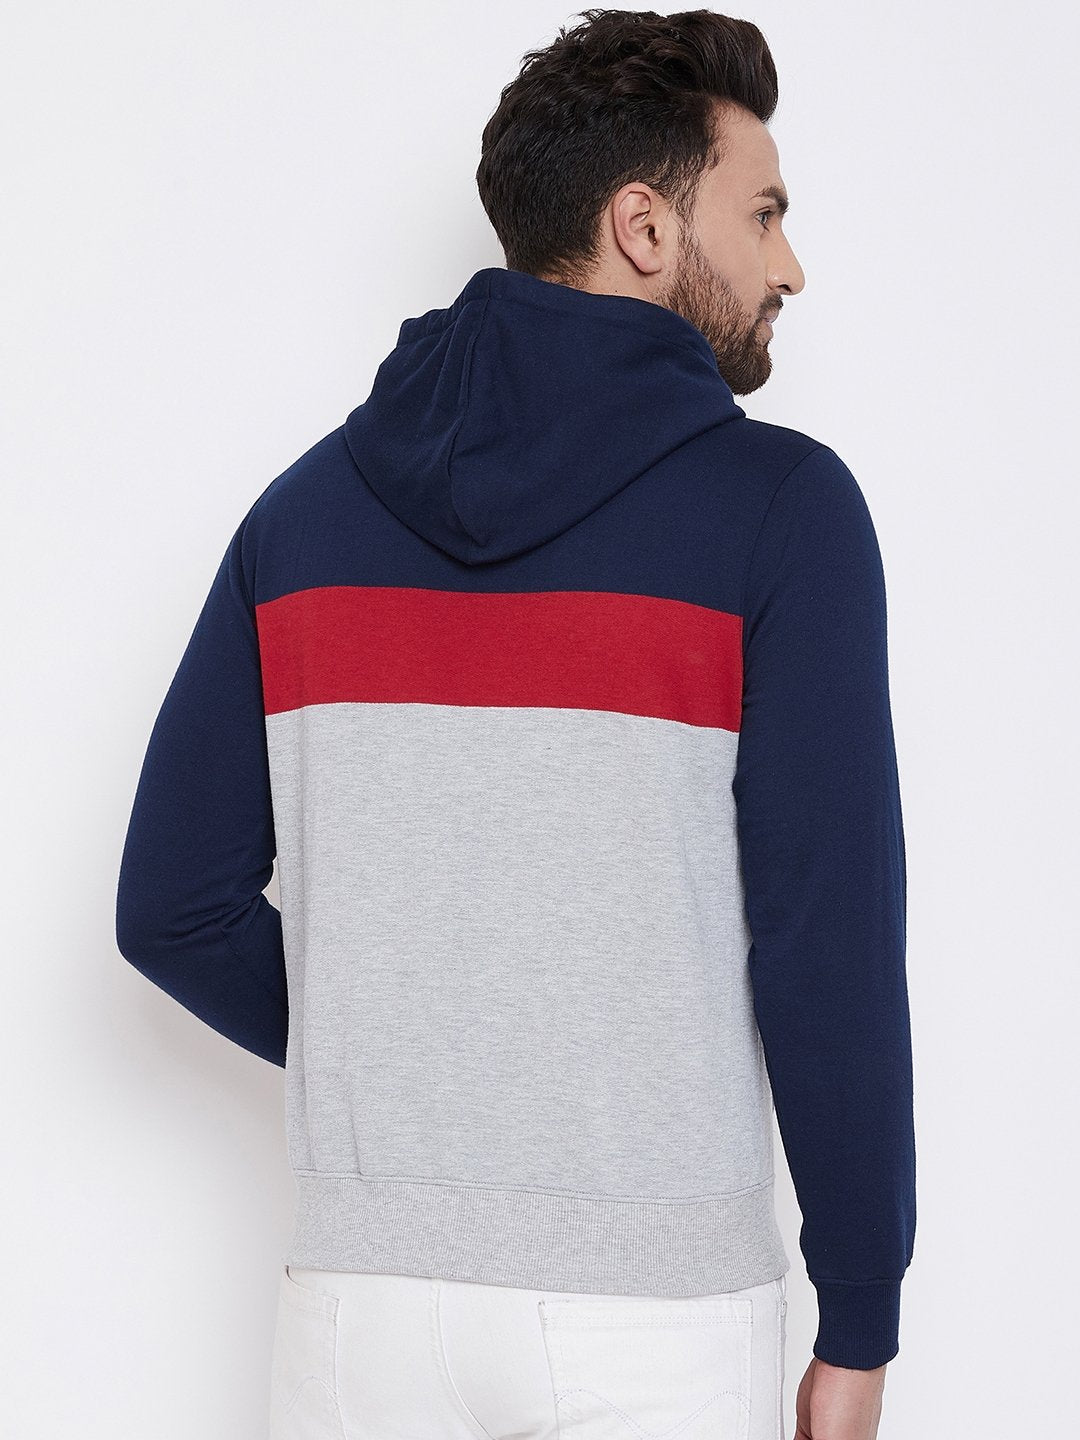 Men's Grey Colorblocked Hooded Sweatshirt